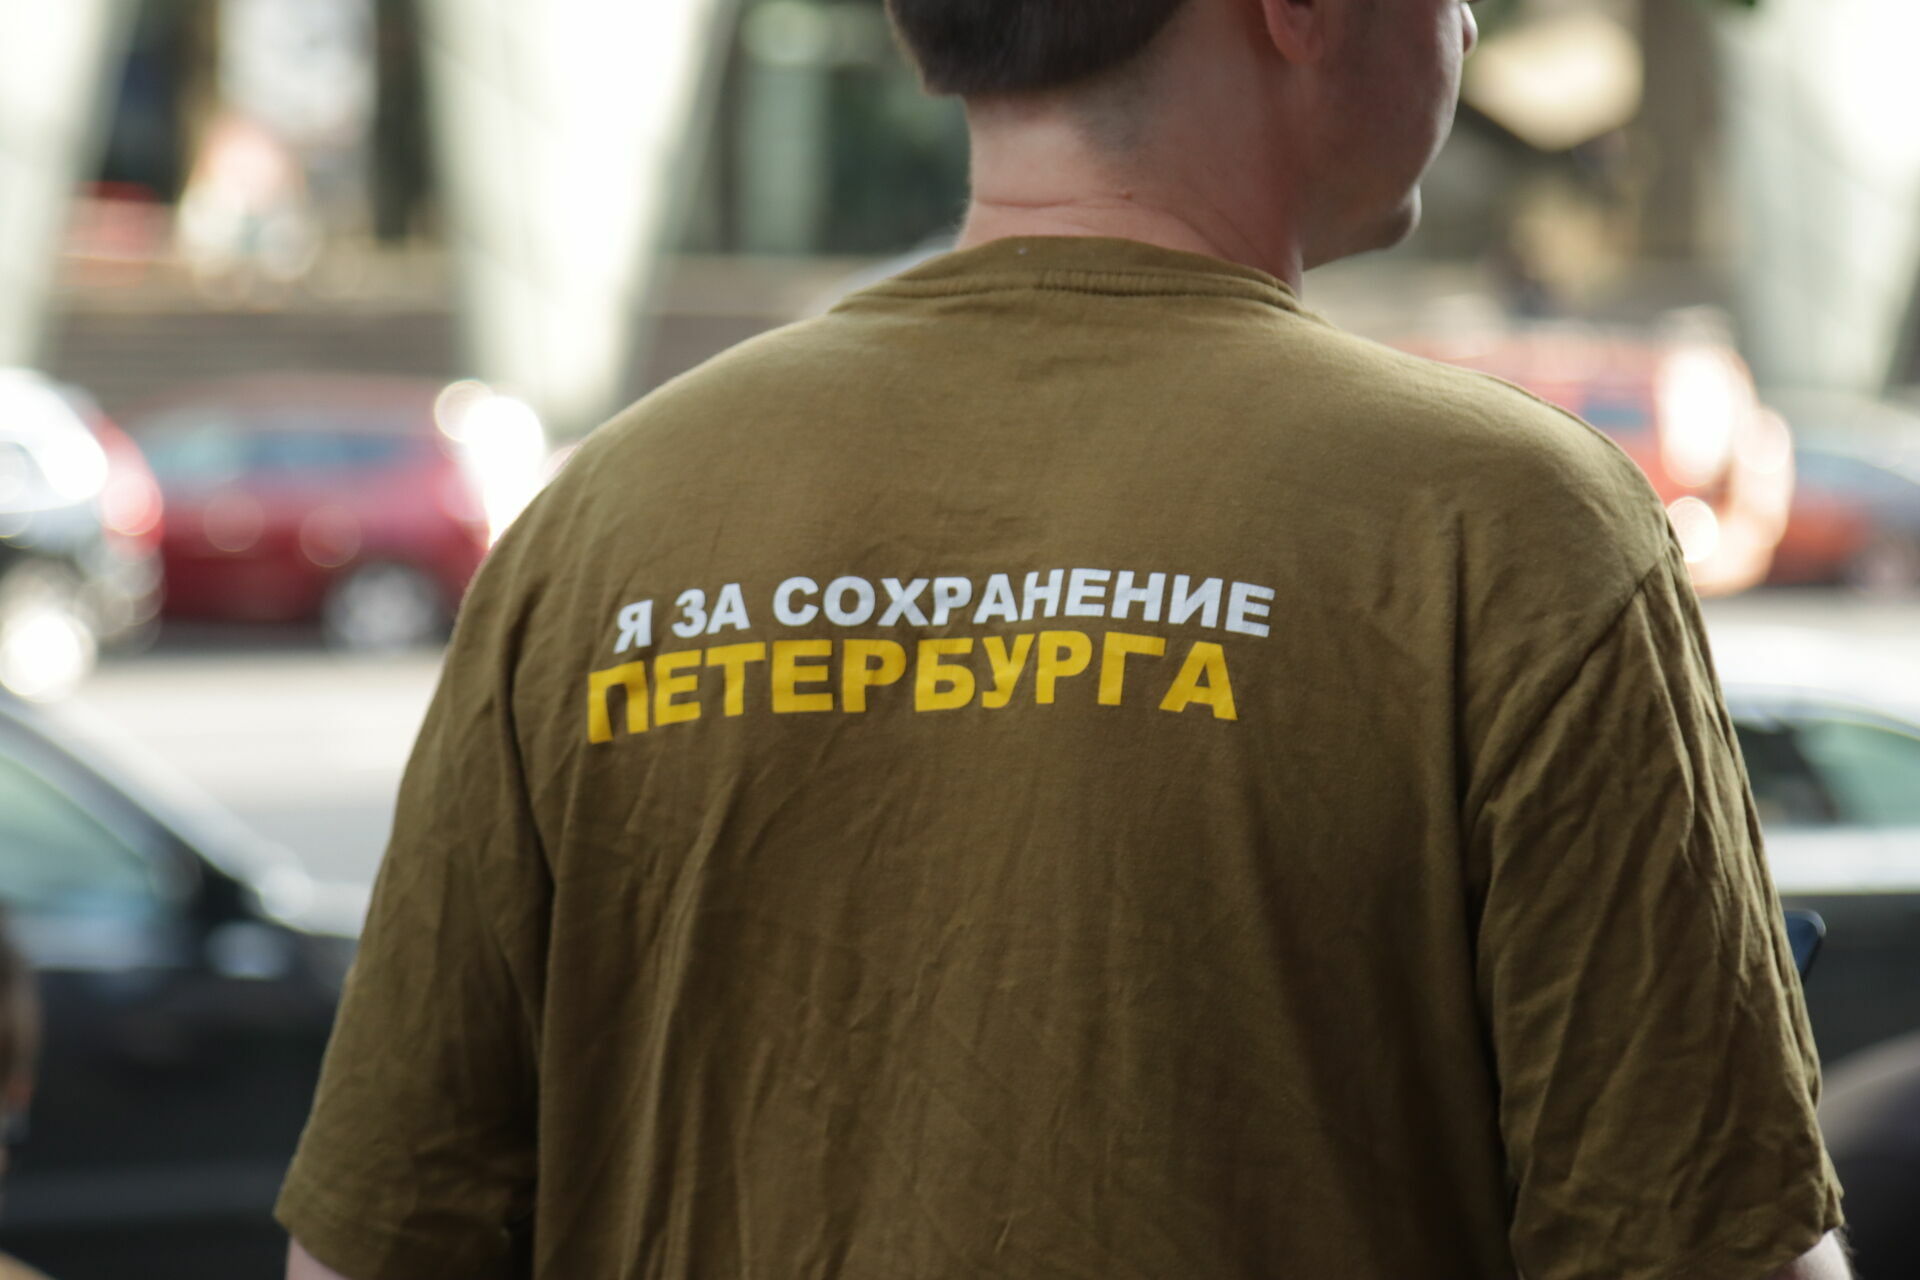 Почти подпольщики: в Петербурге пытаются пересобрать градозащитное движение